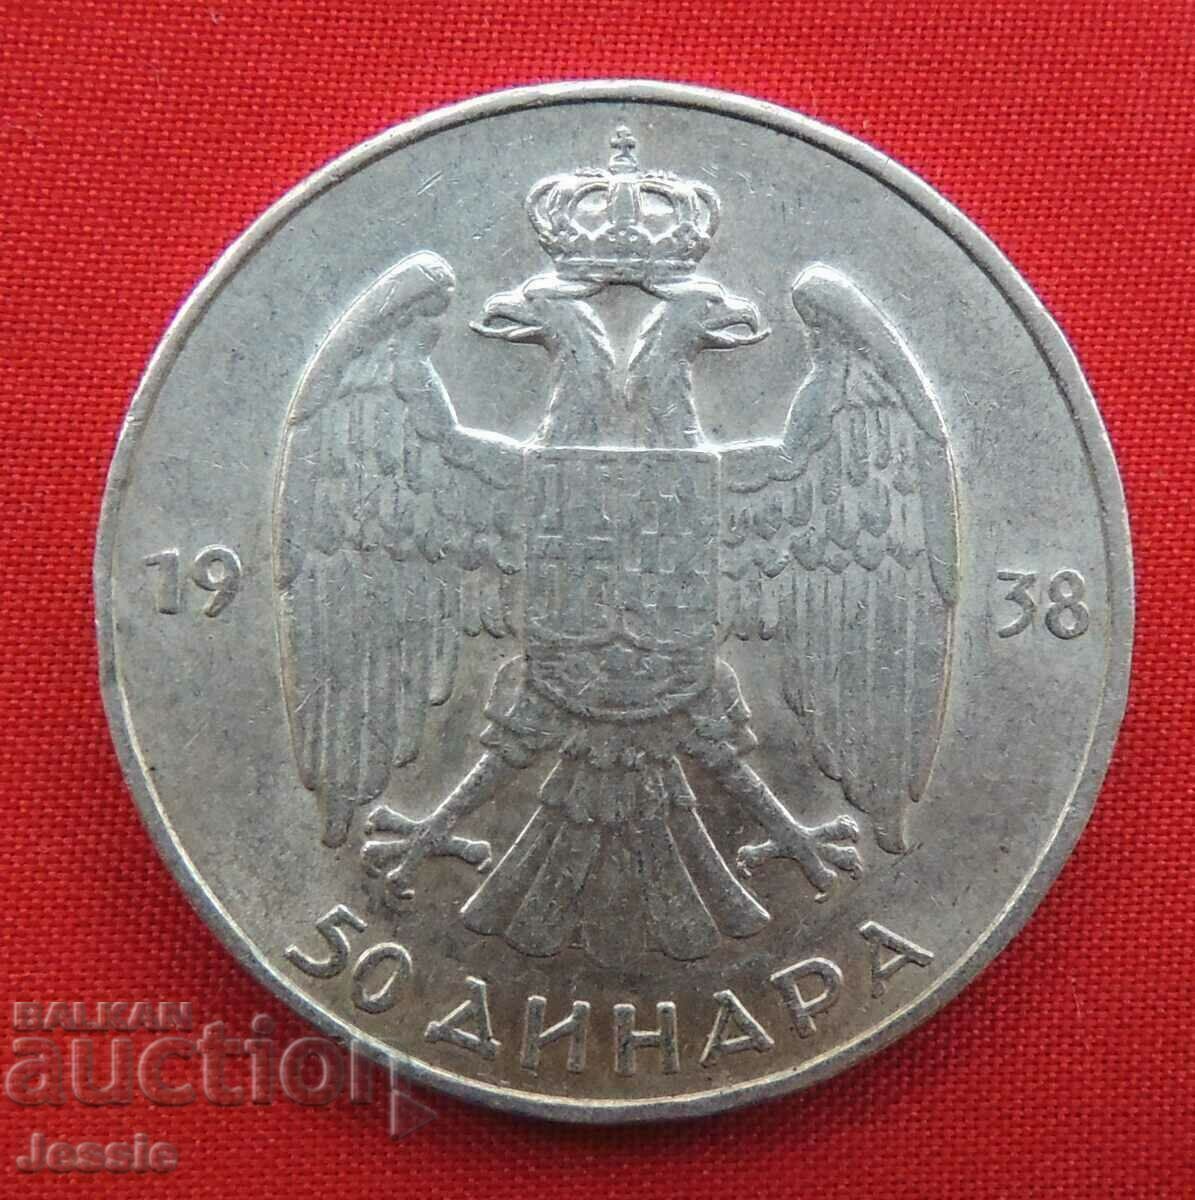 50 Dinars 1938 Yugoslavia silver Compare and Rate!